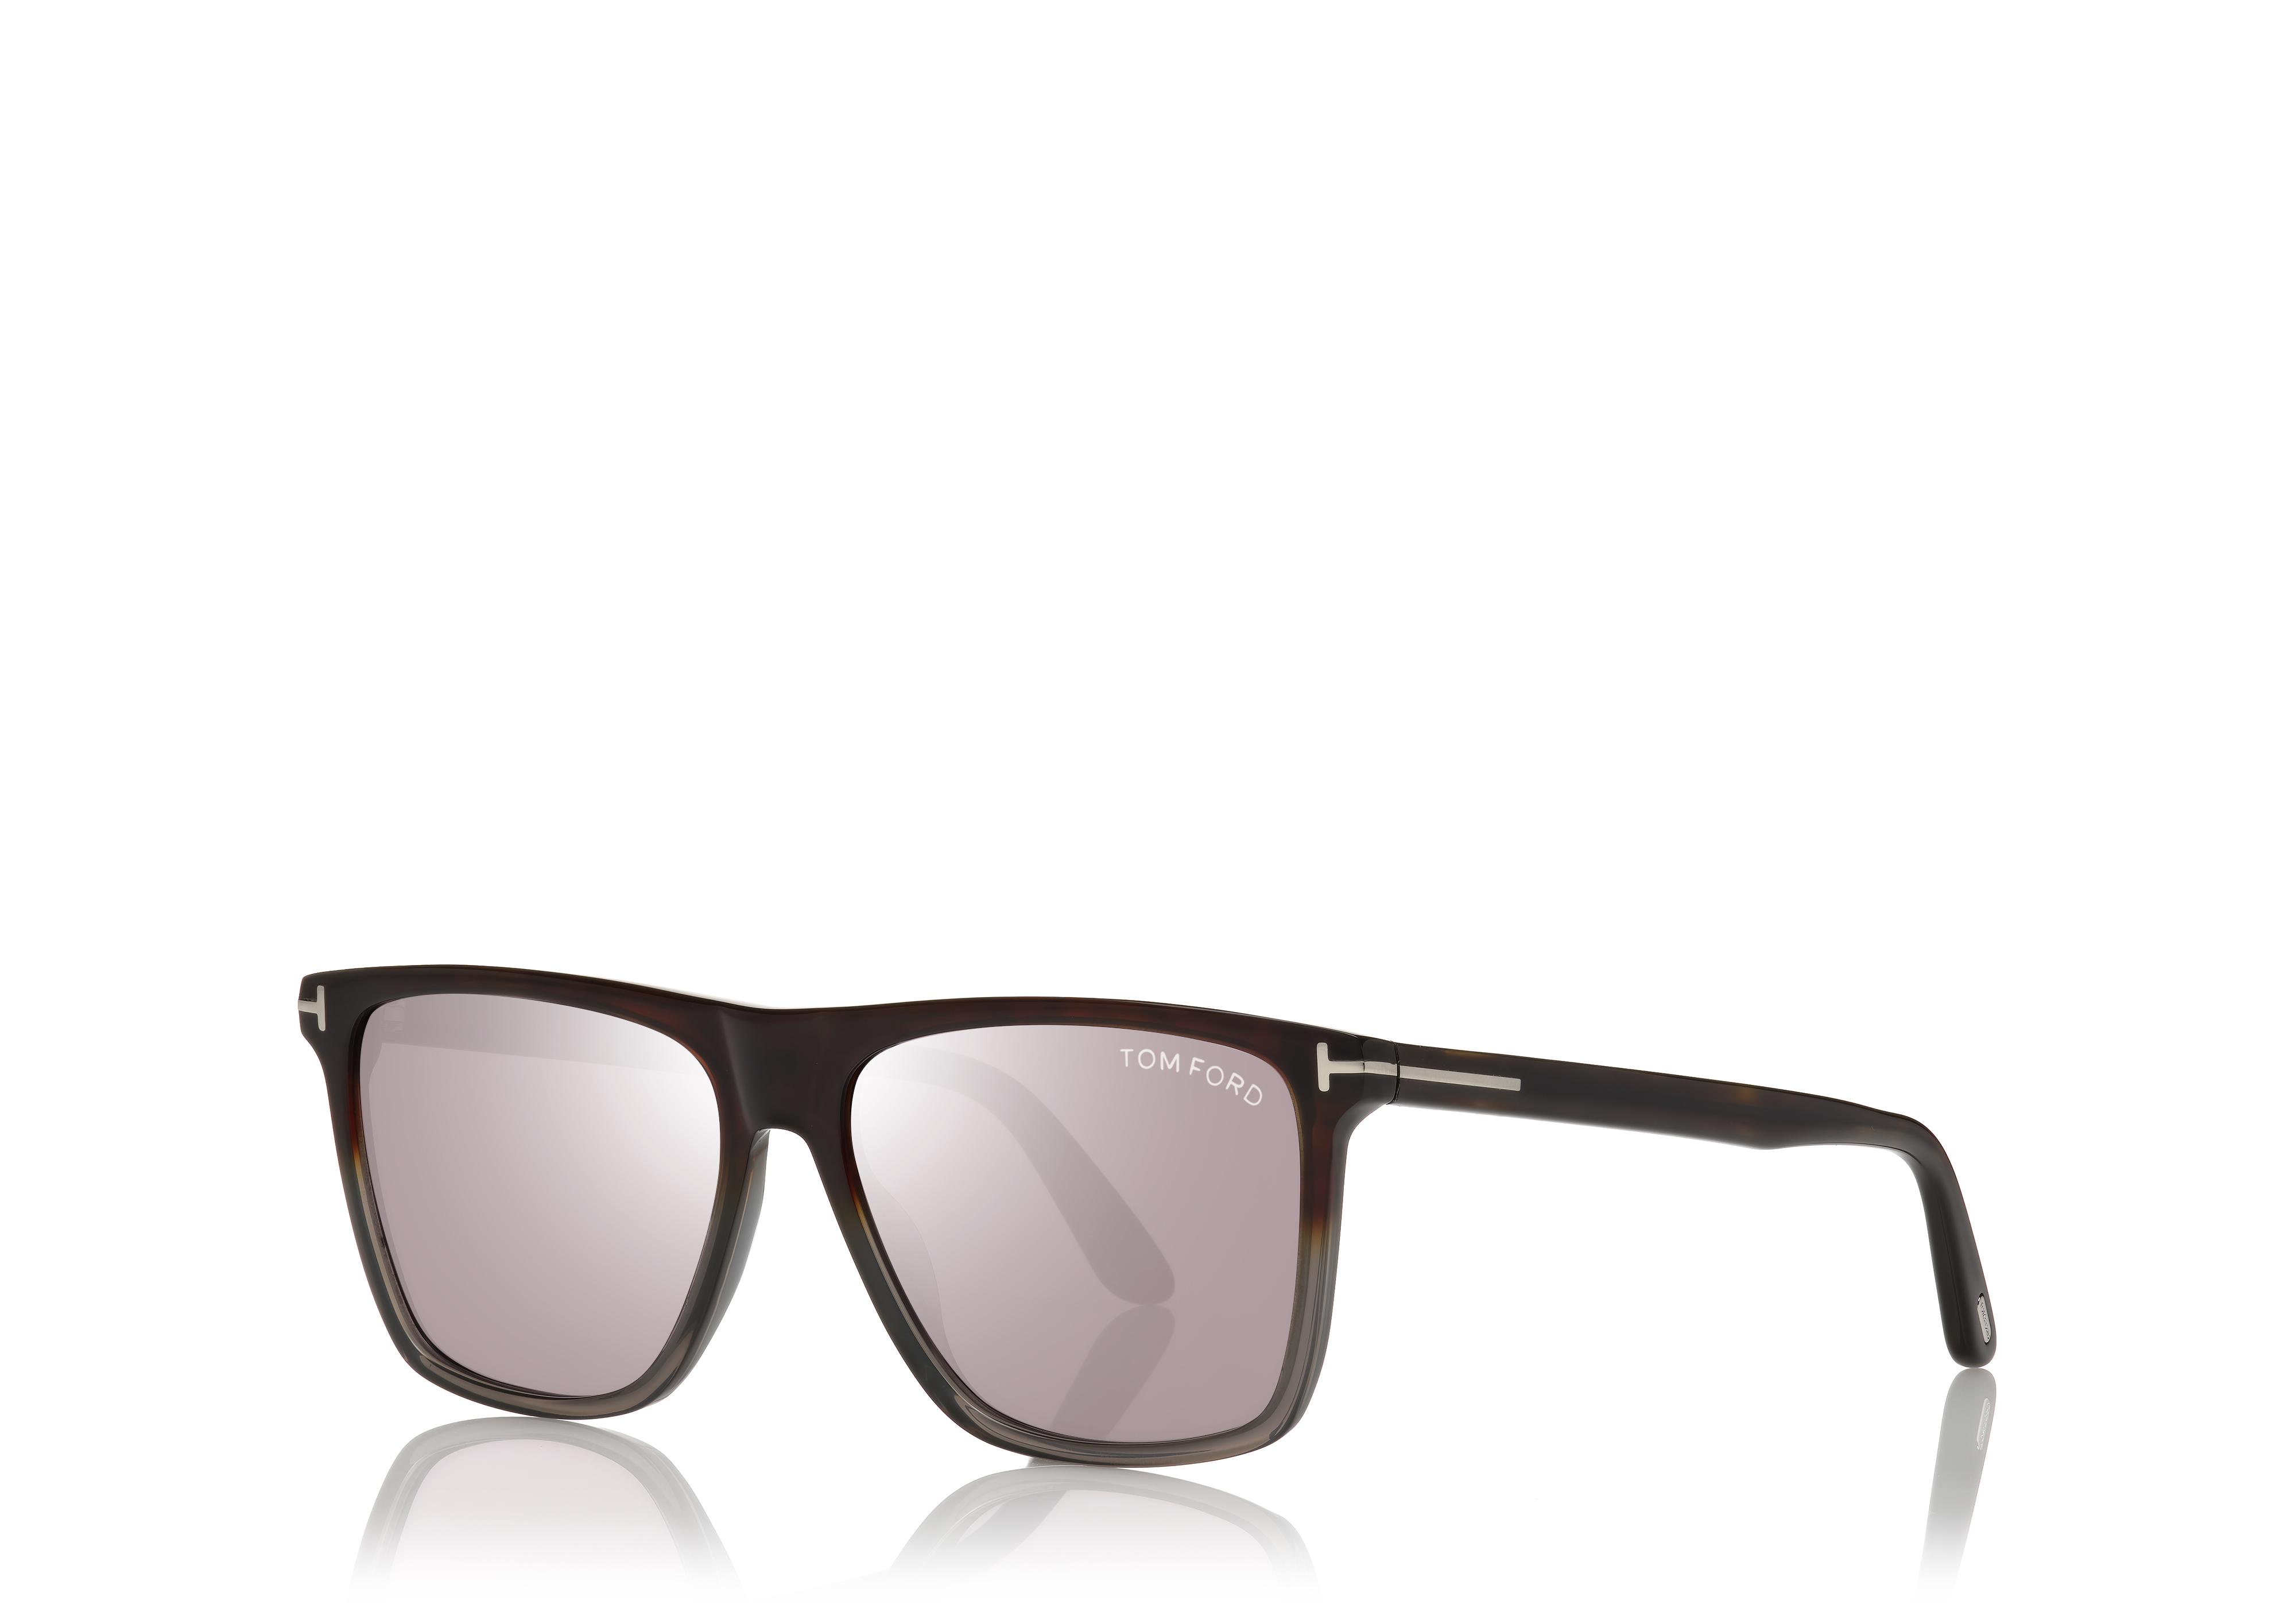 Tom Ford Men's Fletcher Sunglasses